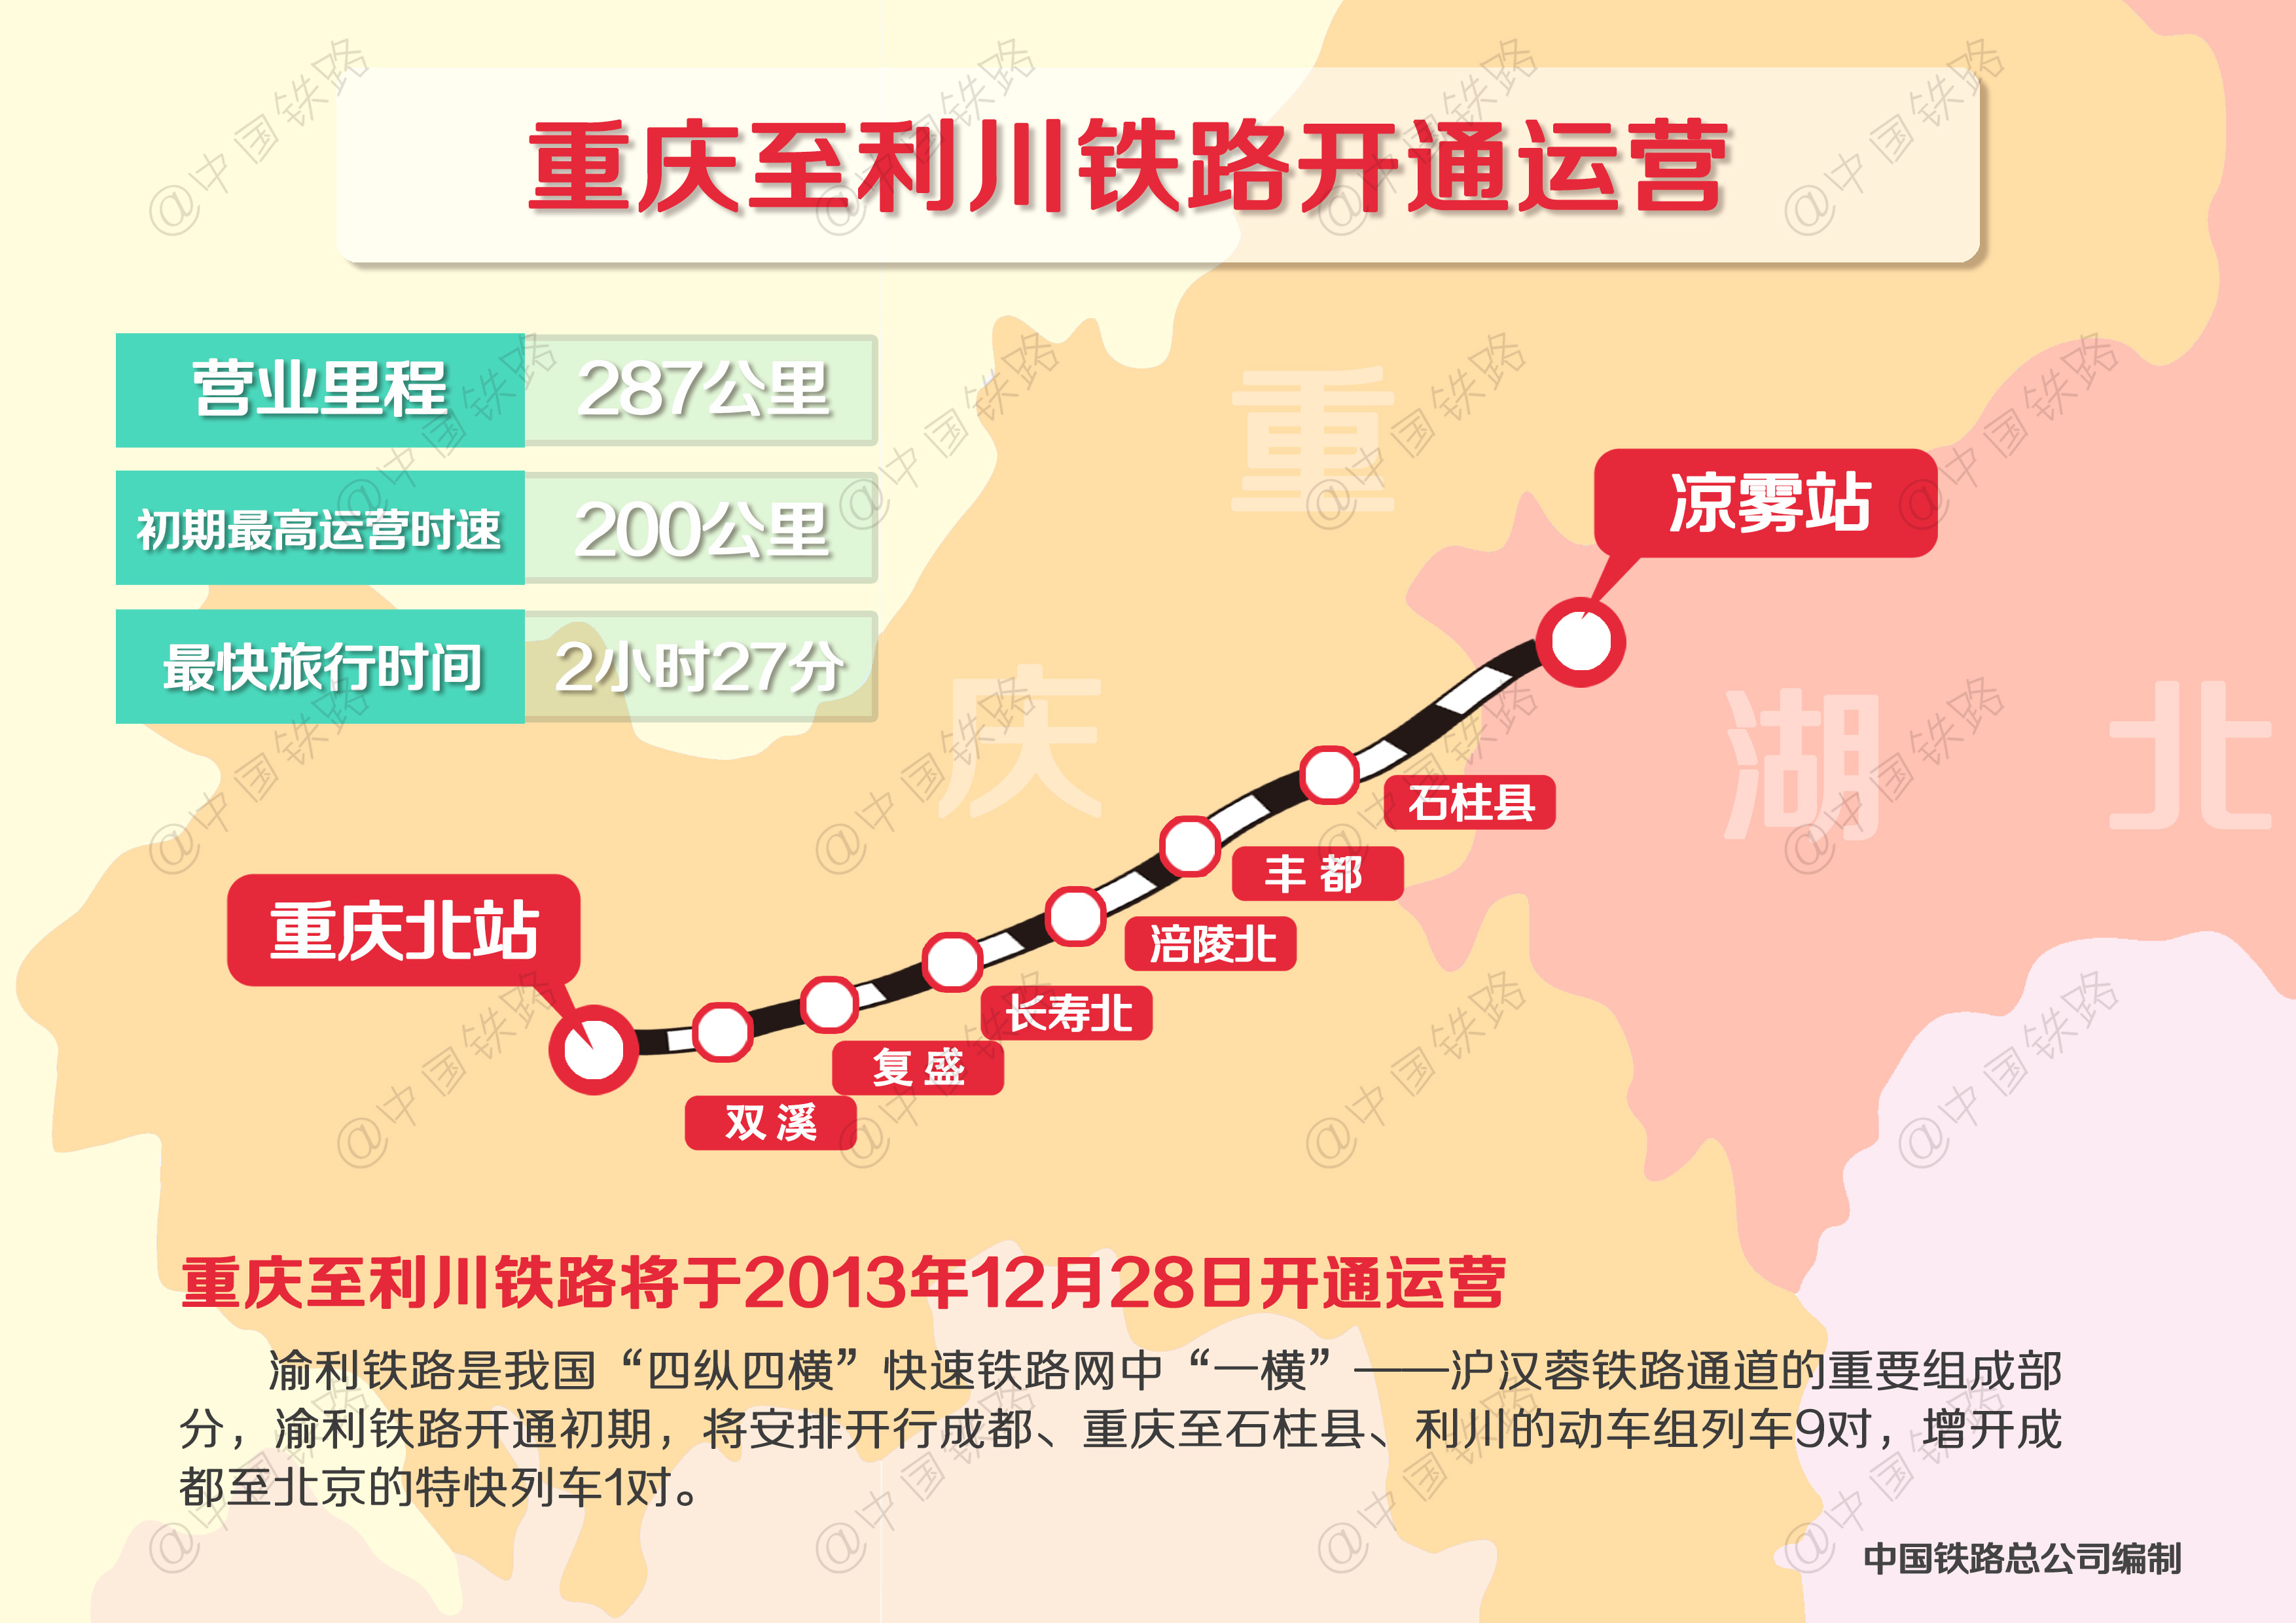 重庆至利川铁路28日开通 总里程287公里